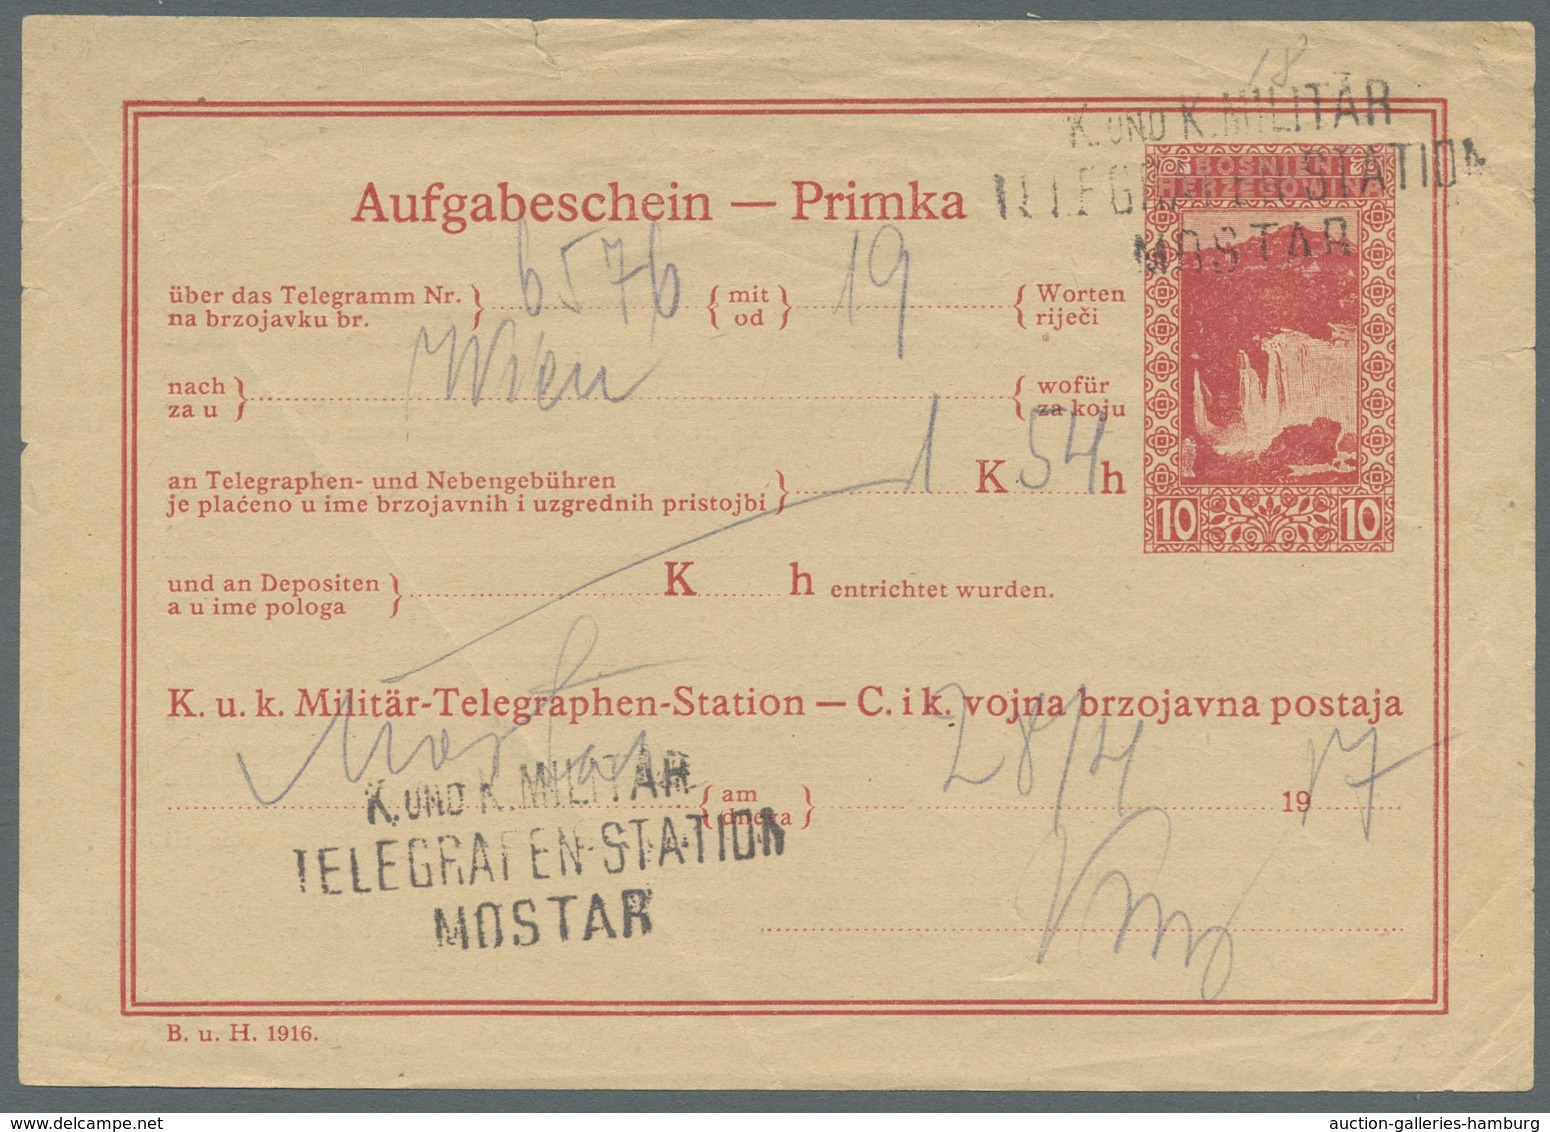 Bosnien und Herzegowina (Österreich 1879/1918): 1894-1918, high-quality collection of postage due st